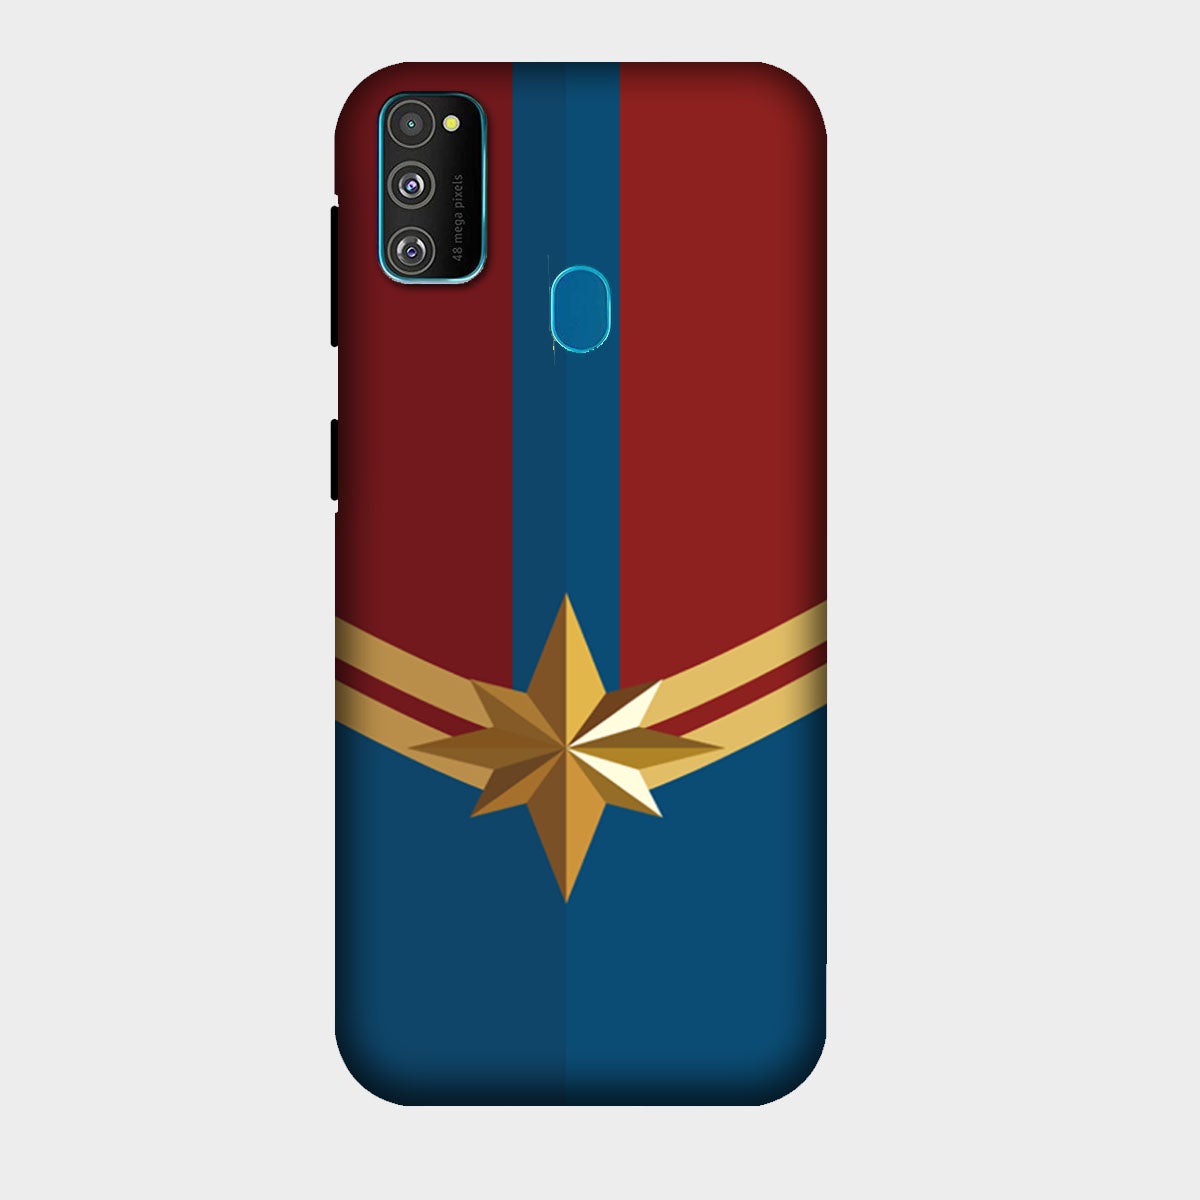 Captain Marvel - Avengers - Mobile Phone Cover - Hard Case - Samsung - Samsung